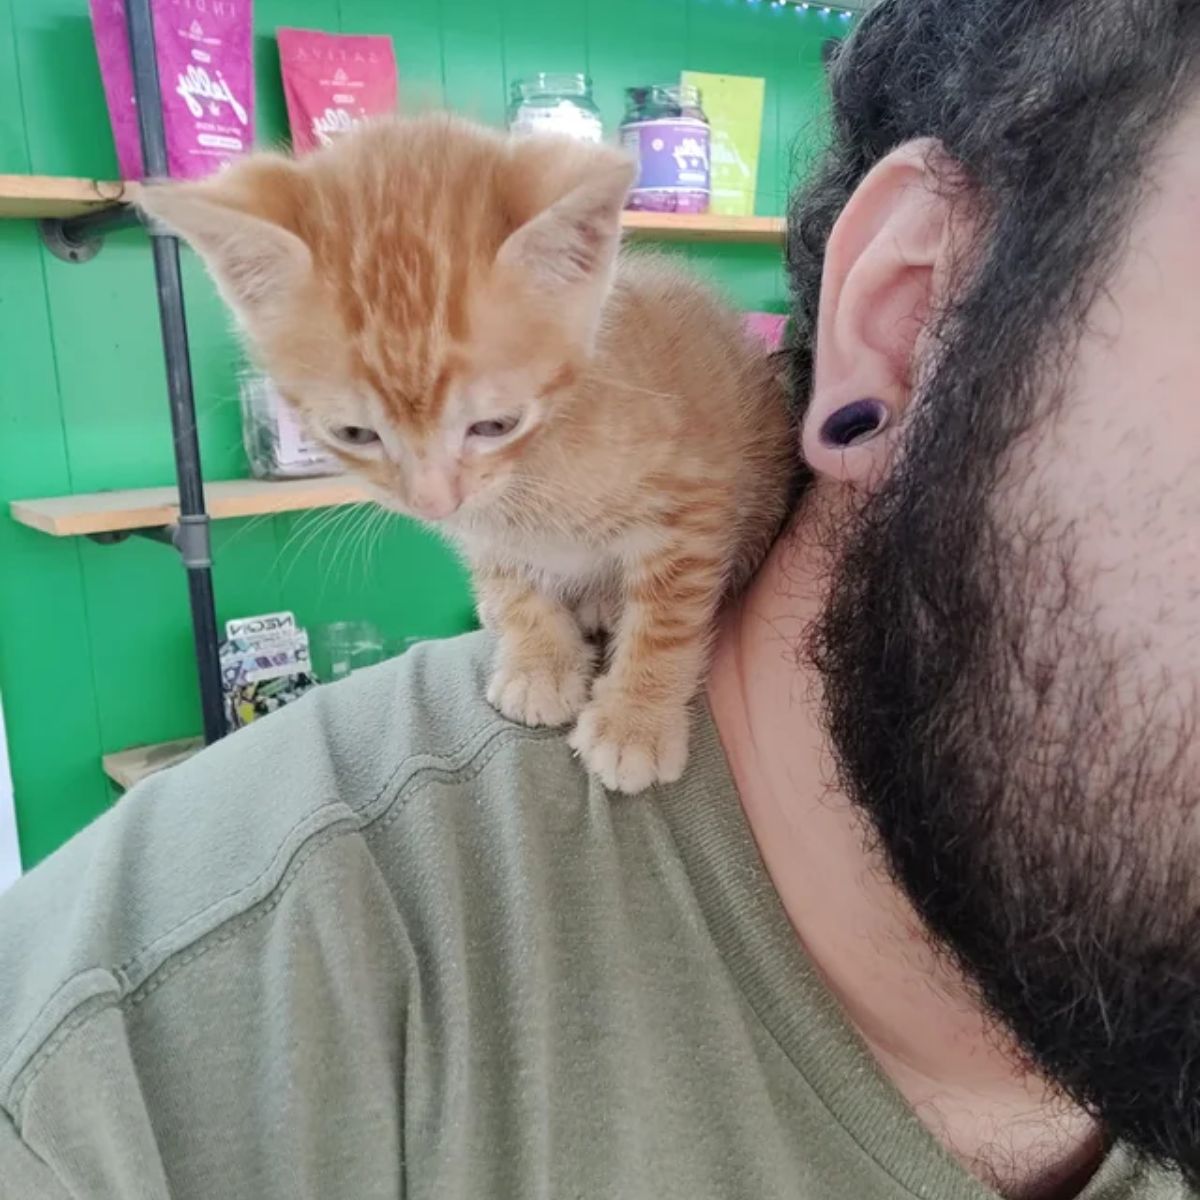 ginger kitten and owner